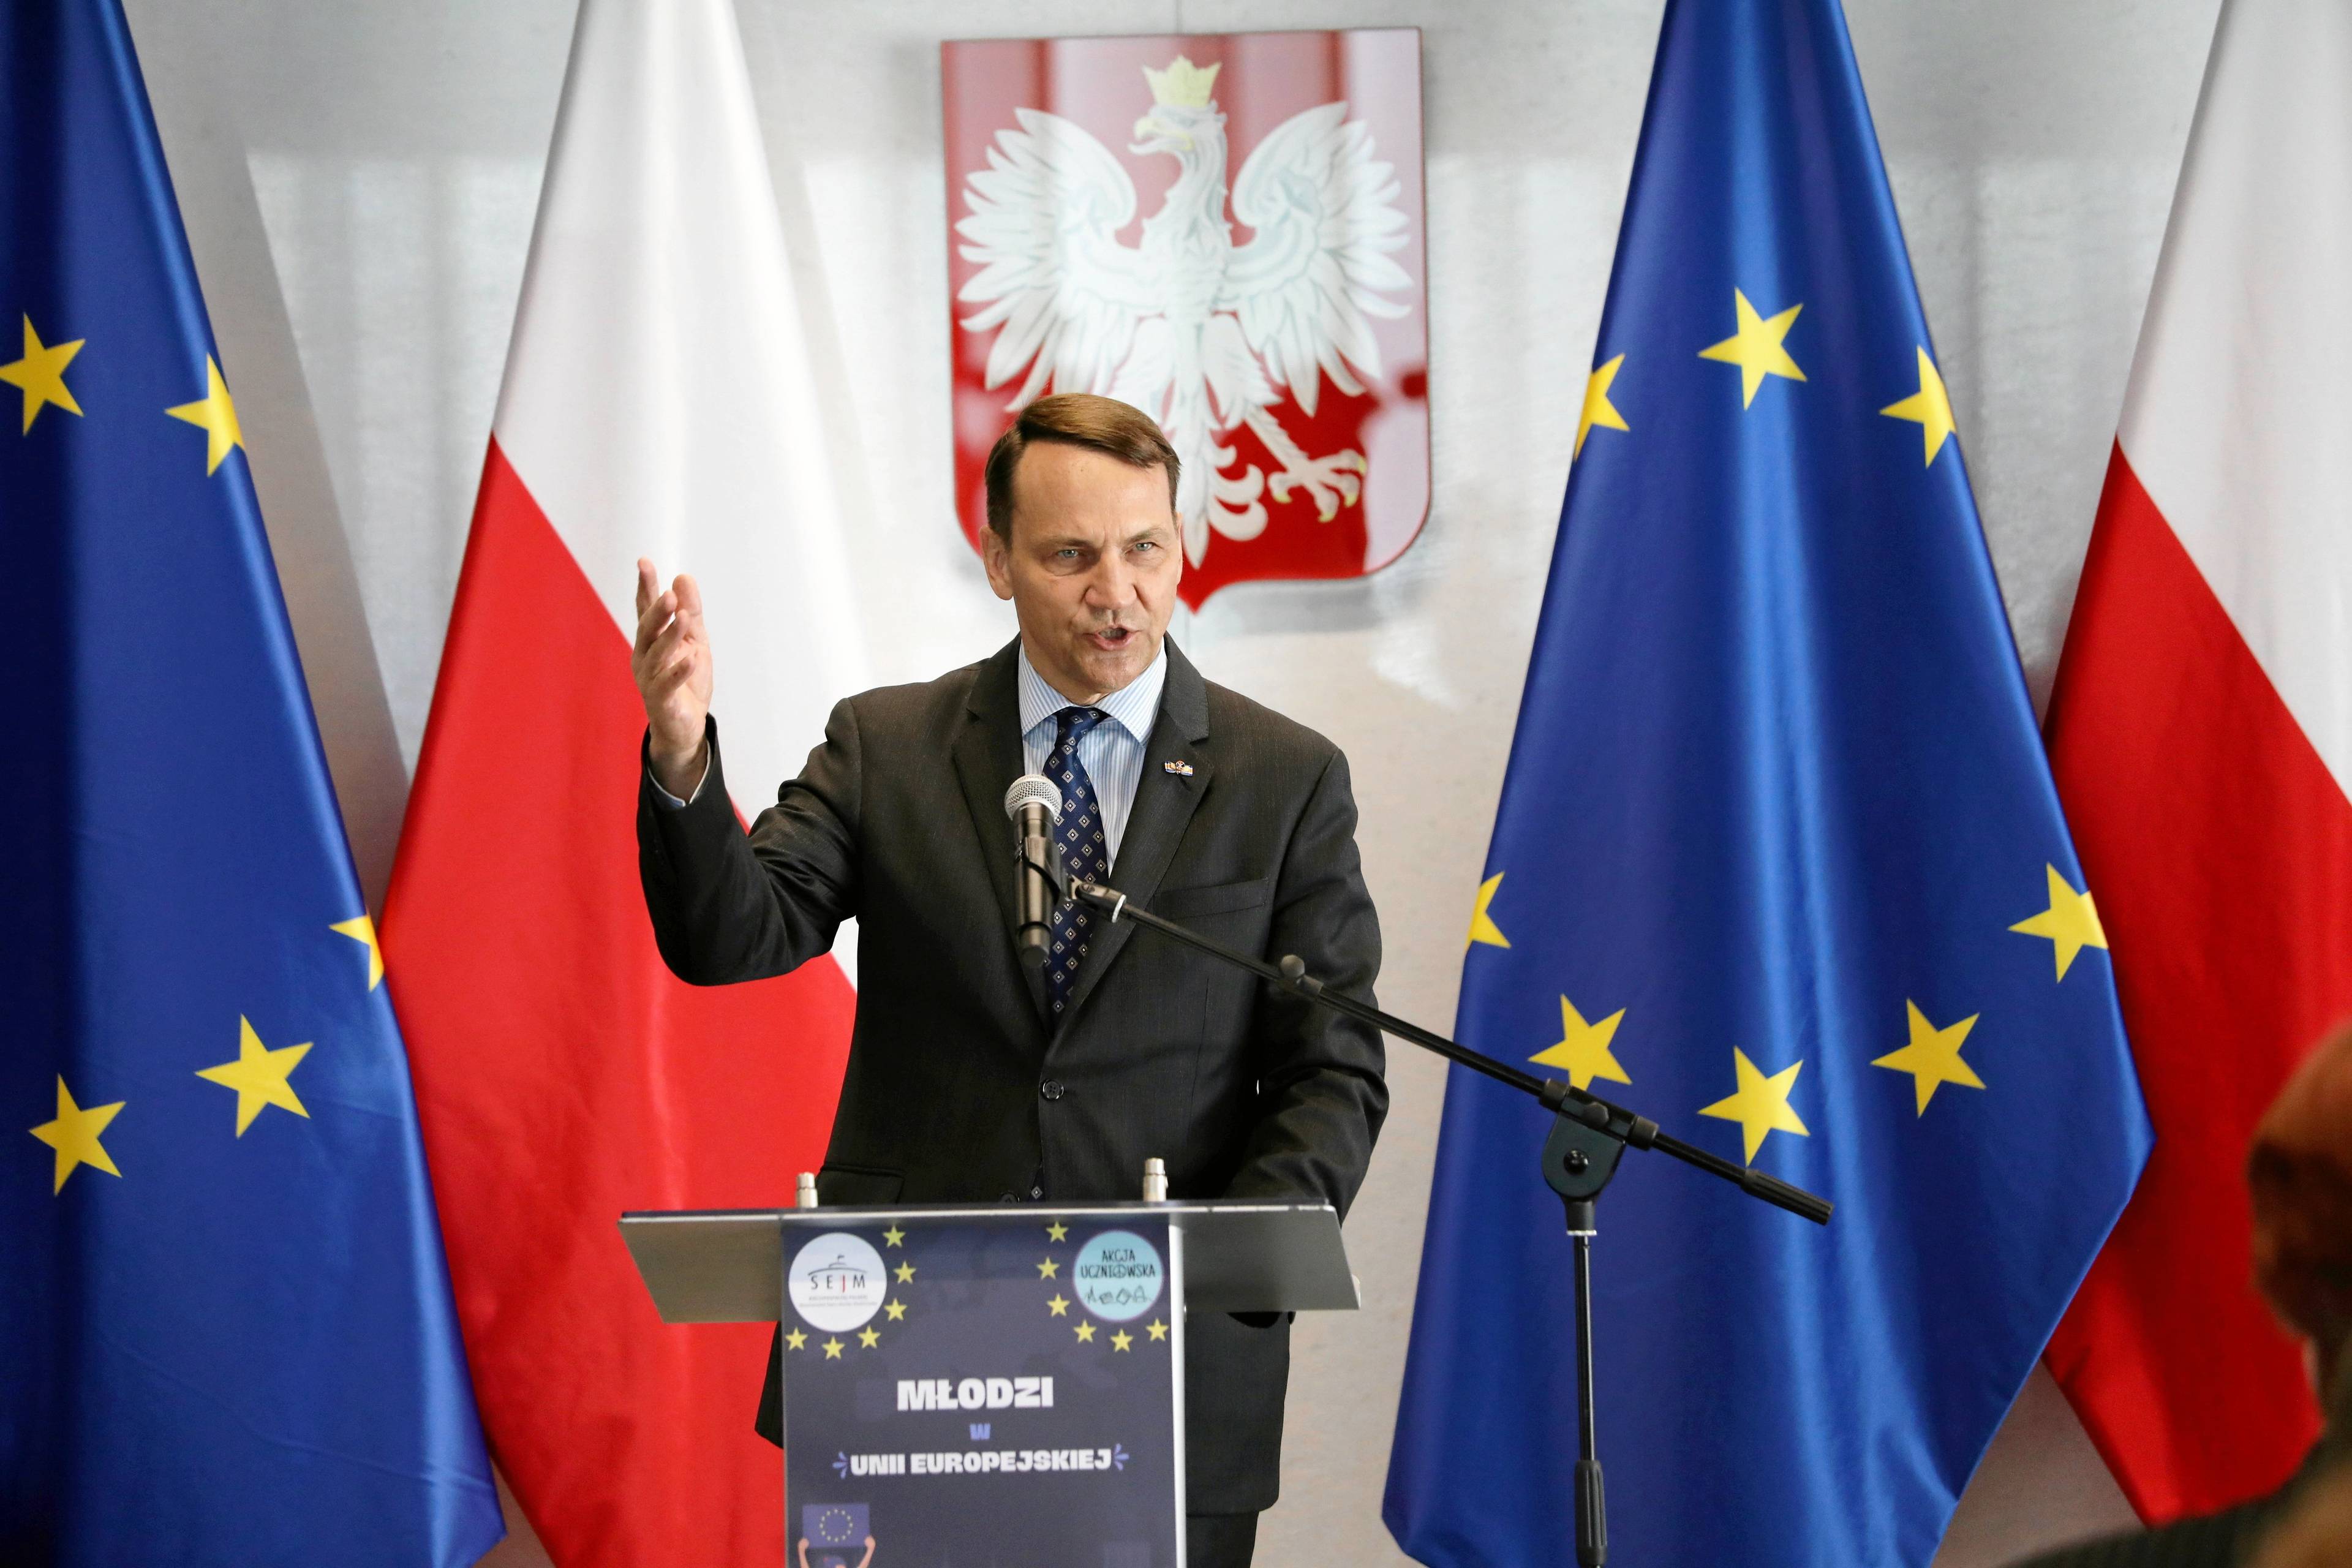 Polityk w garniturze z podniesioną ręką przemawia na tle flag Polski i Unii